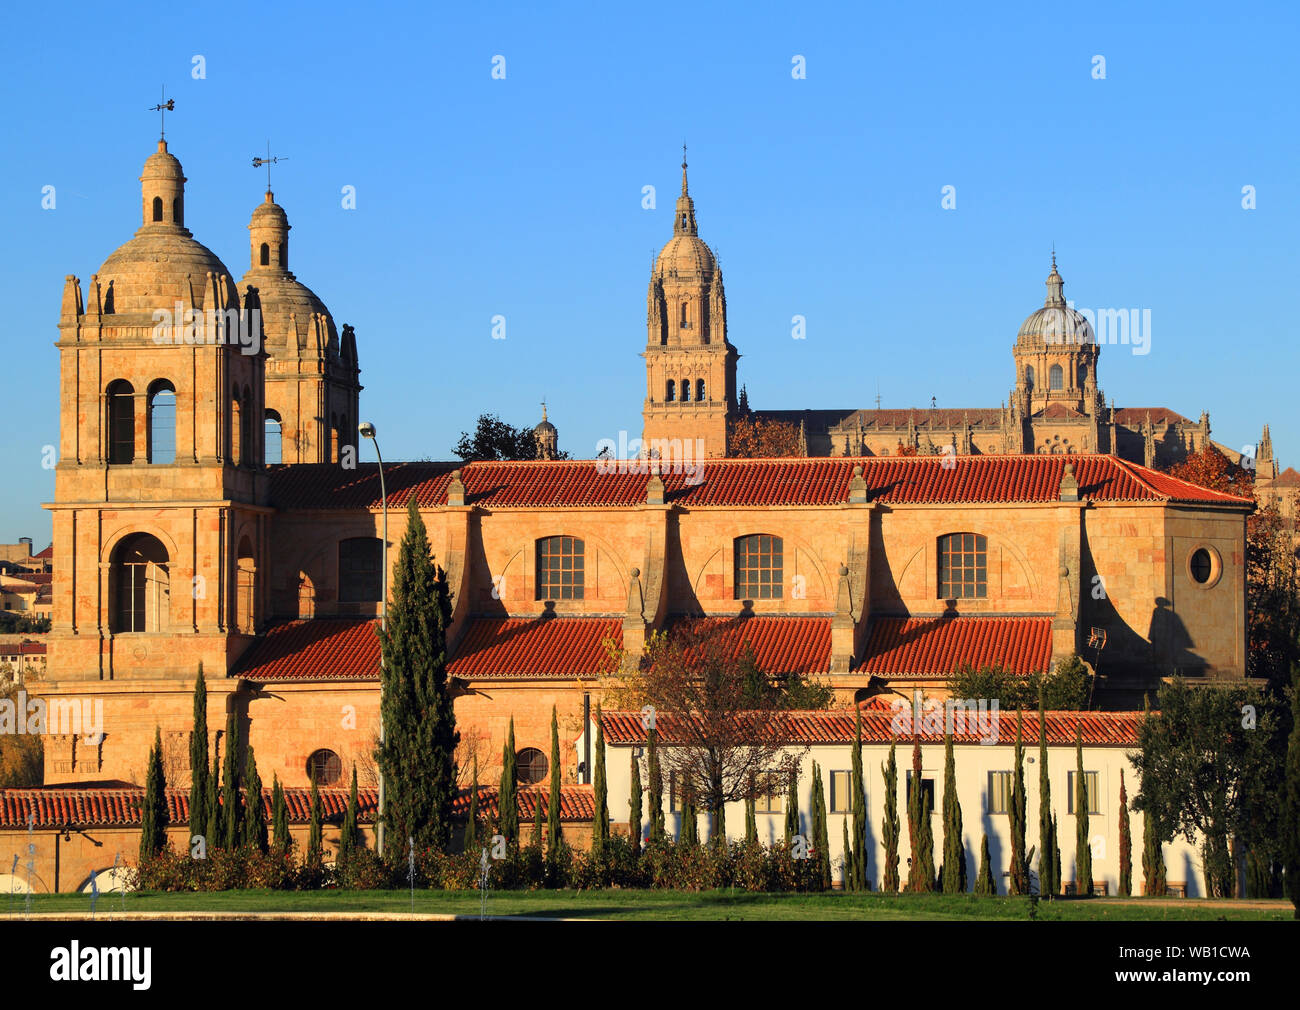 Salamanca, Spanien - UNESCO Weltkulturerbe mit romanischen, gotischen, Renaissance und barocken Denkmälern. Die Kirche von: Iglesia de Santisima Trinidad de Arrabal. Stockfoto